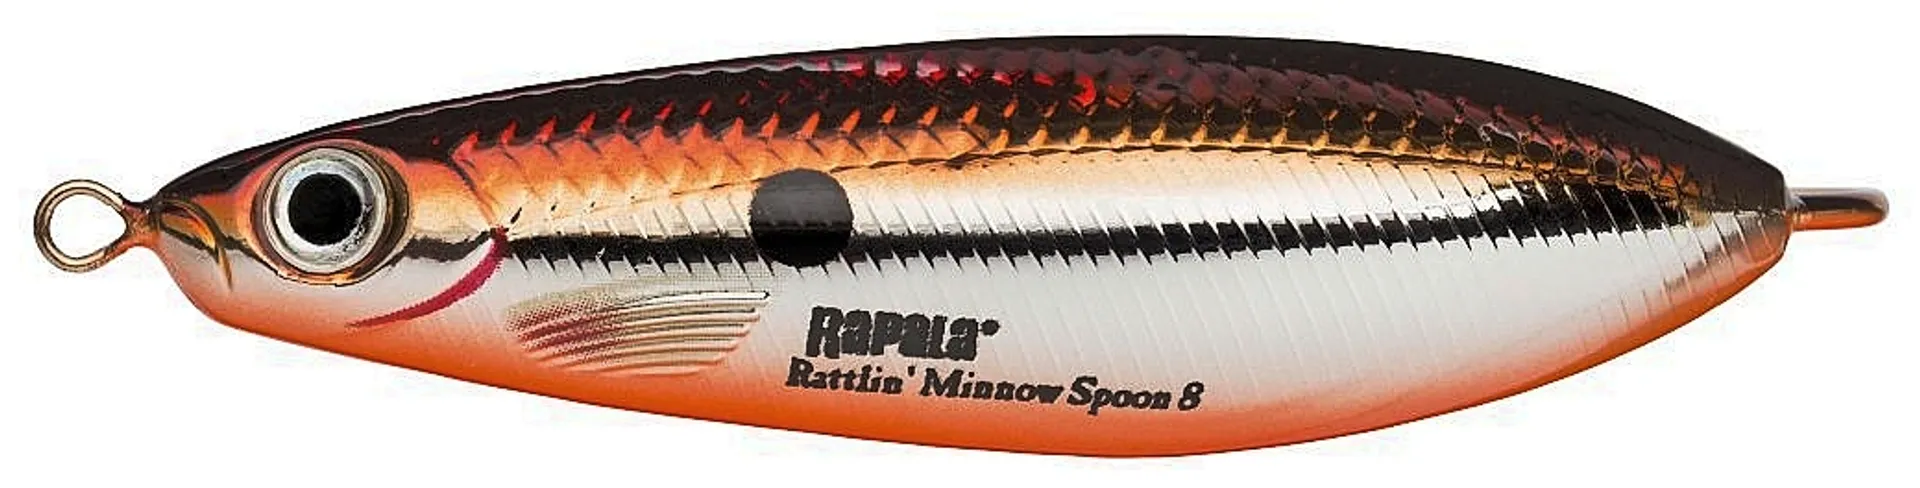 Rapala Rattlin' Minnow Spoon 08 Sbr lusikkauistin